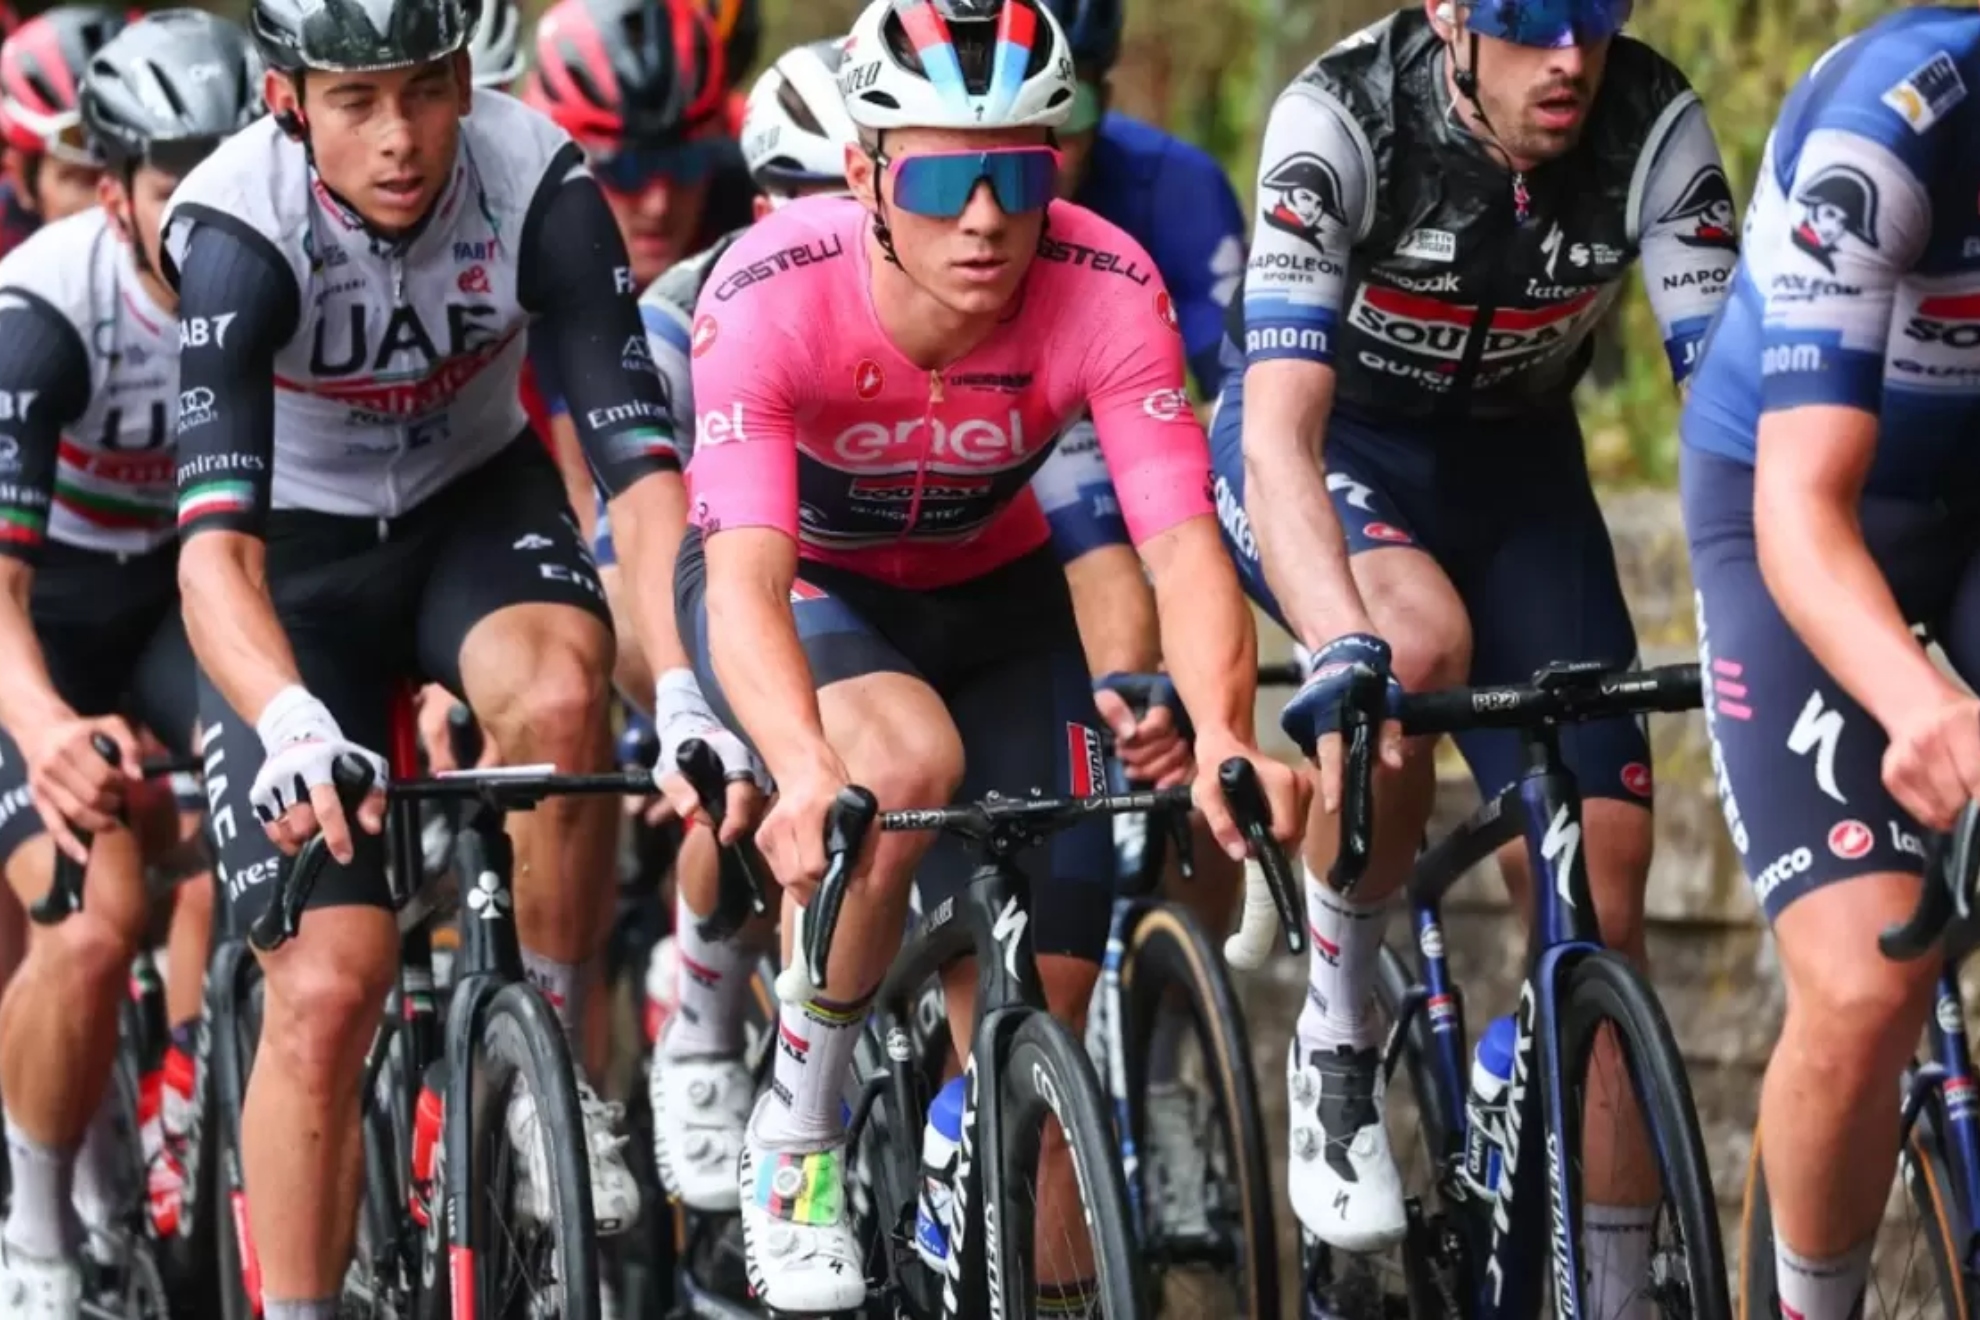 Reacciones tras la tercera etapa del Giro de Italia: "Coger unos segundos de ventaja siempre es bueno"